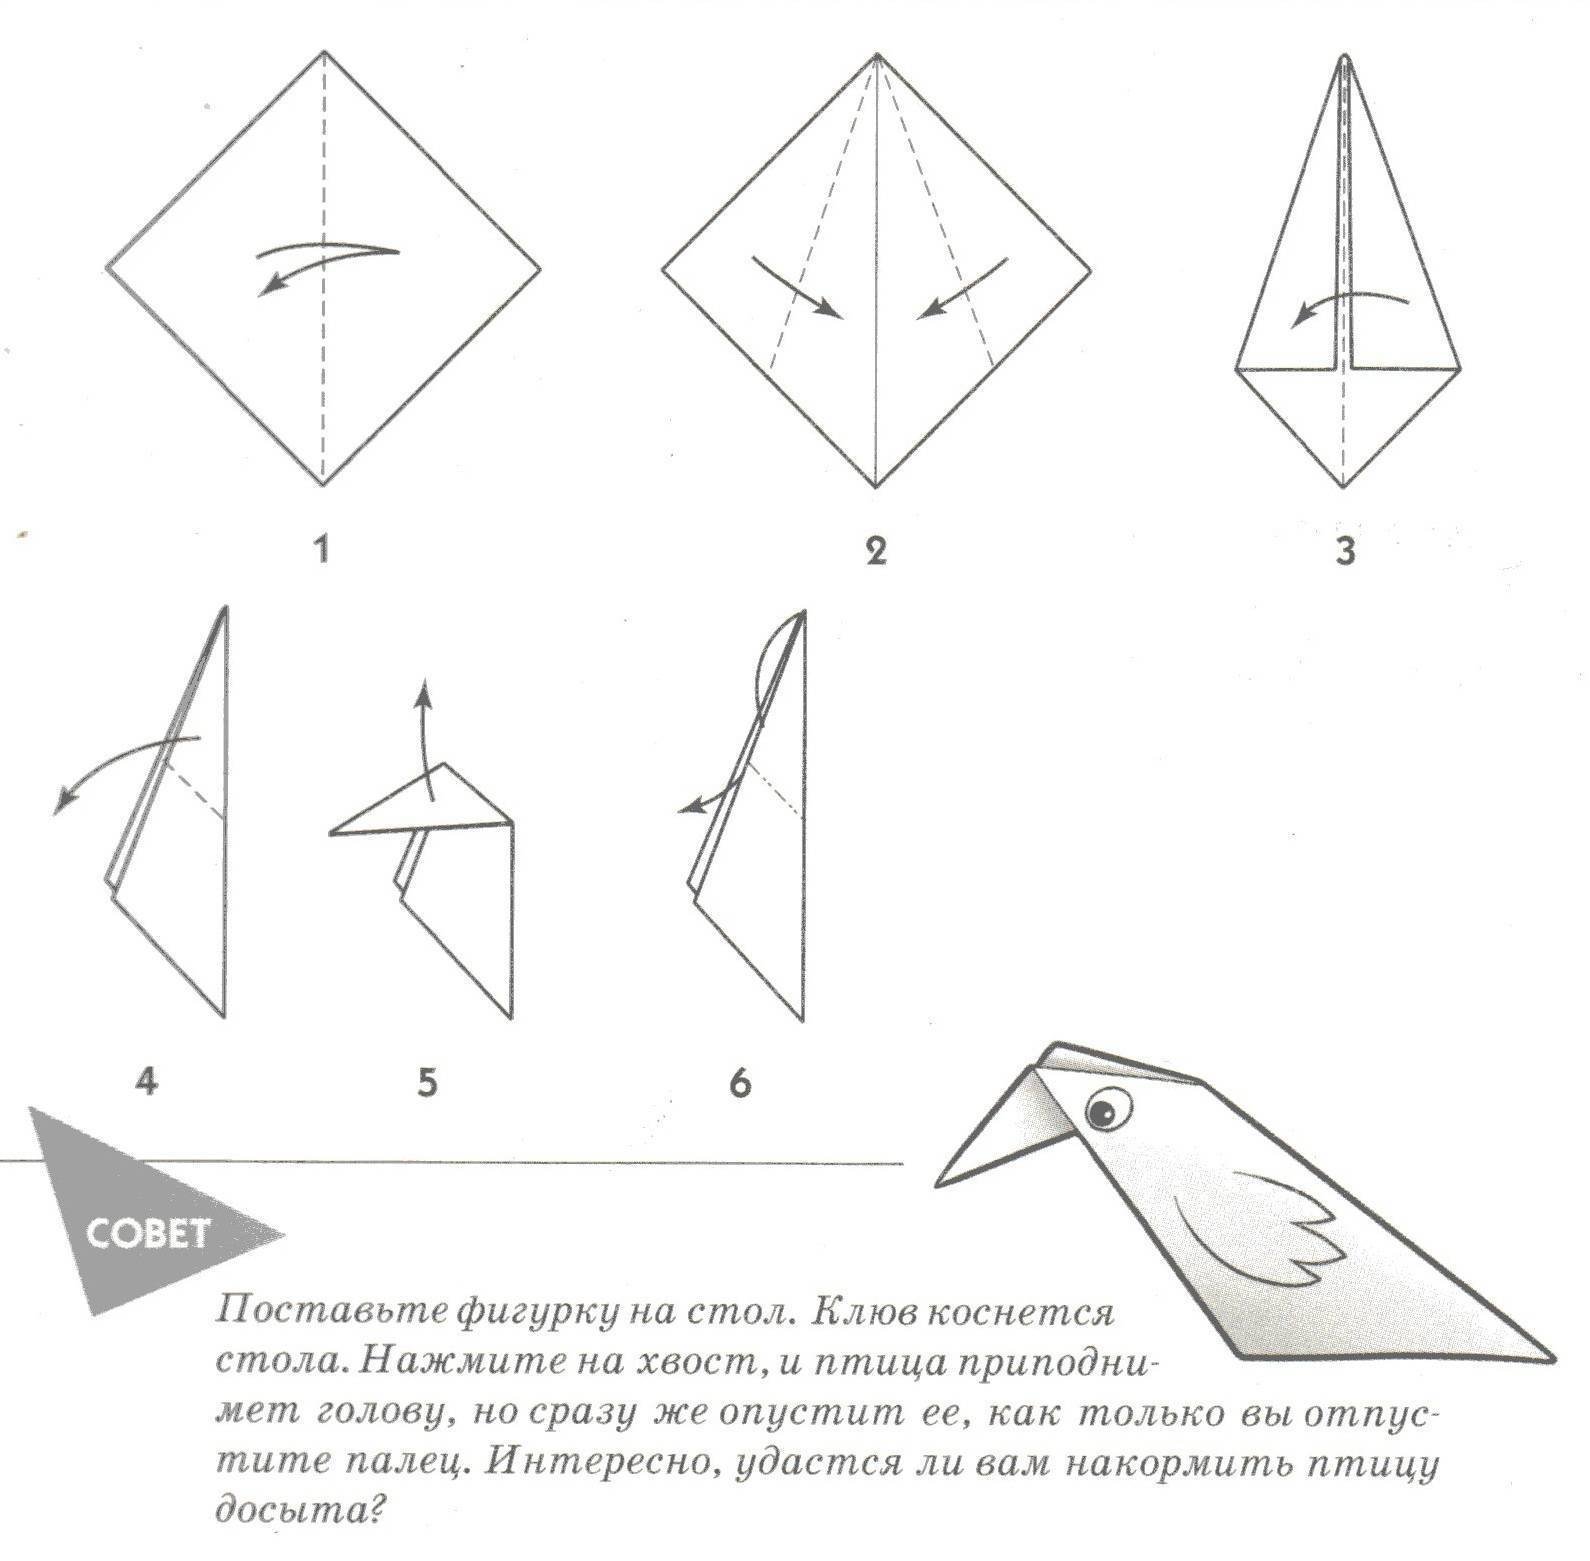 Оригами голубь схема. Оригами птичка из бумаги для детей простая. Птица оригами из бумаги простая схема для детей. Птица оригами простая схема для детей. Оригами птица из бумаги пошаговая инструкция для детей 5 лет.